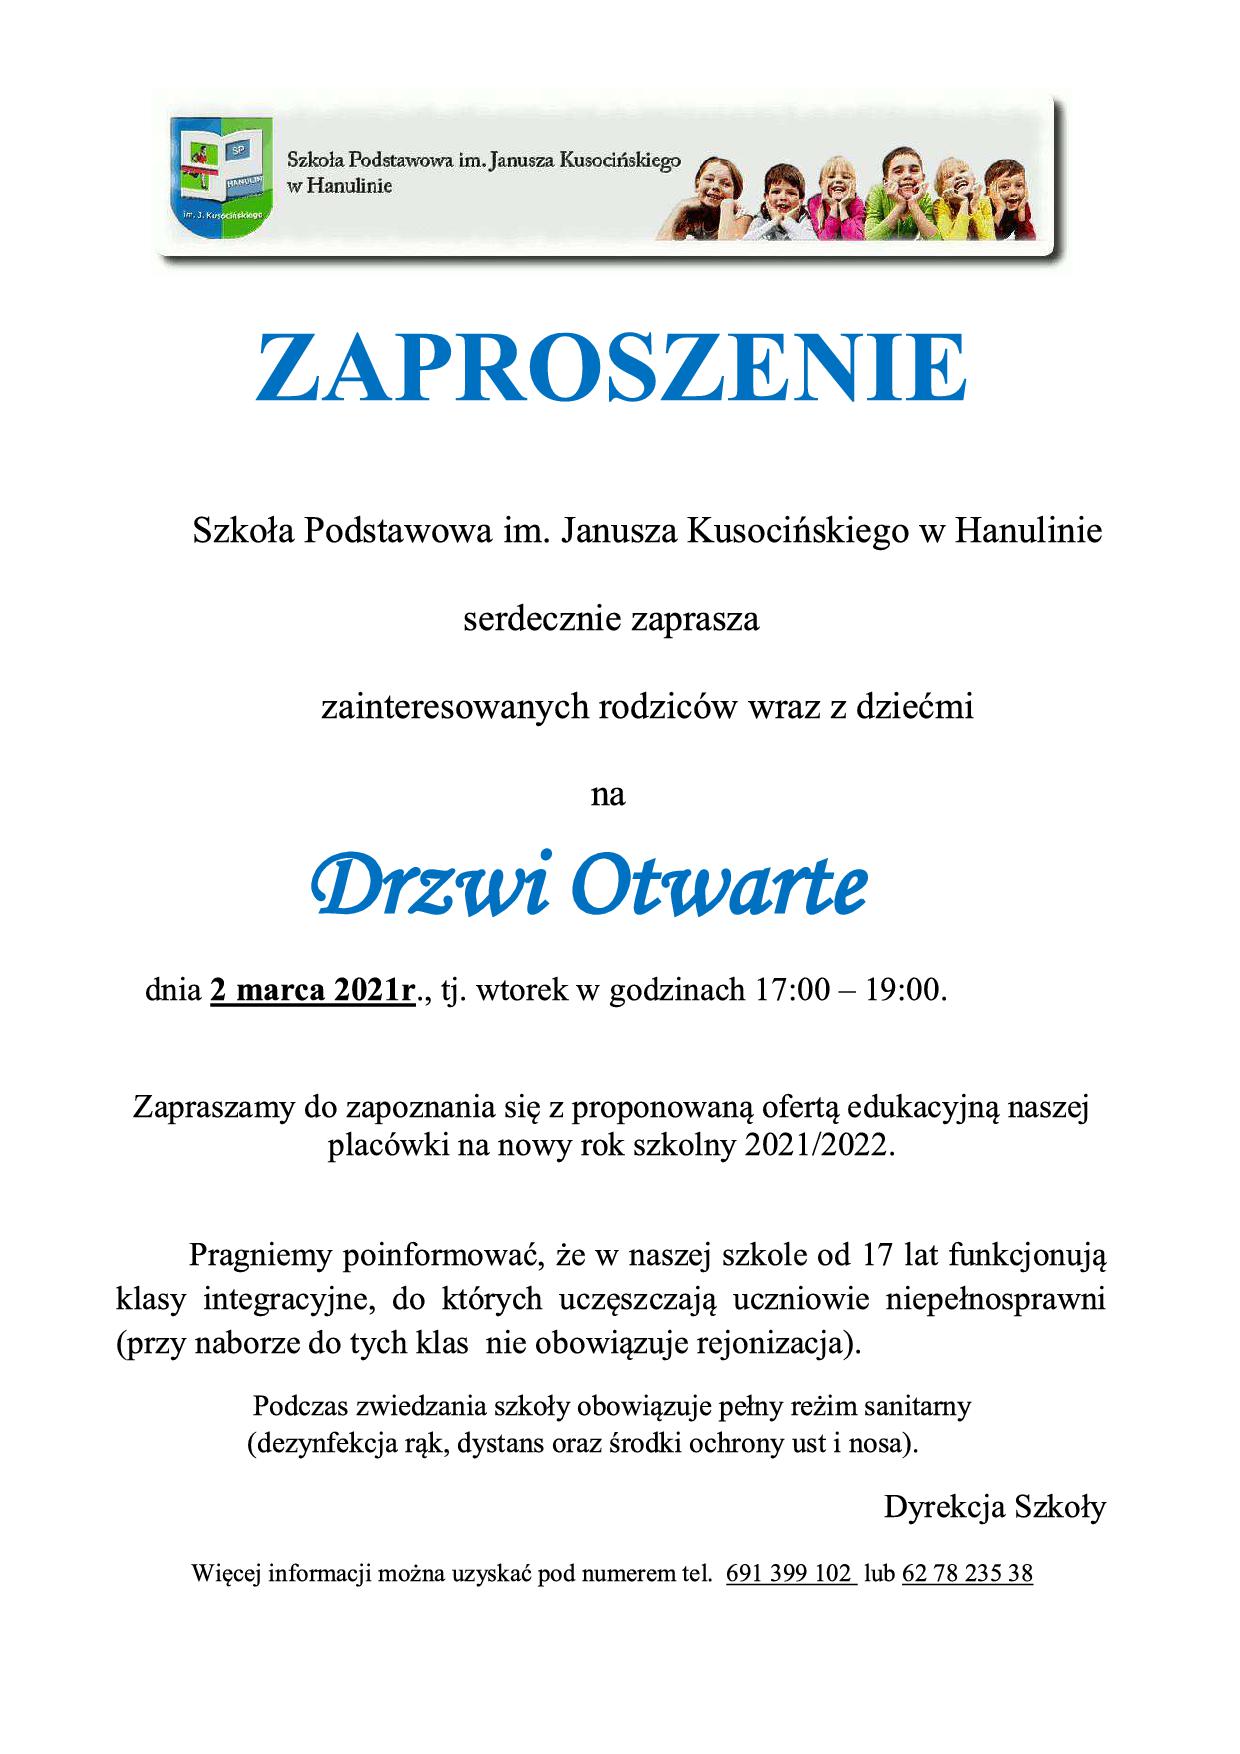 Zaproszenie - Drzwi Otwarte Szkoła Podstawowa im. Janusza Kusocińskiego w Hanulinie